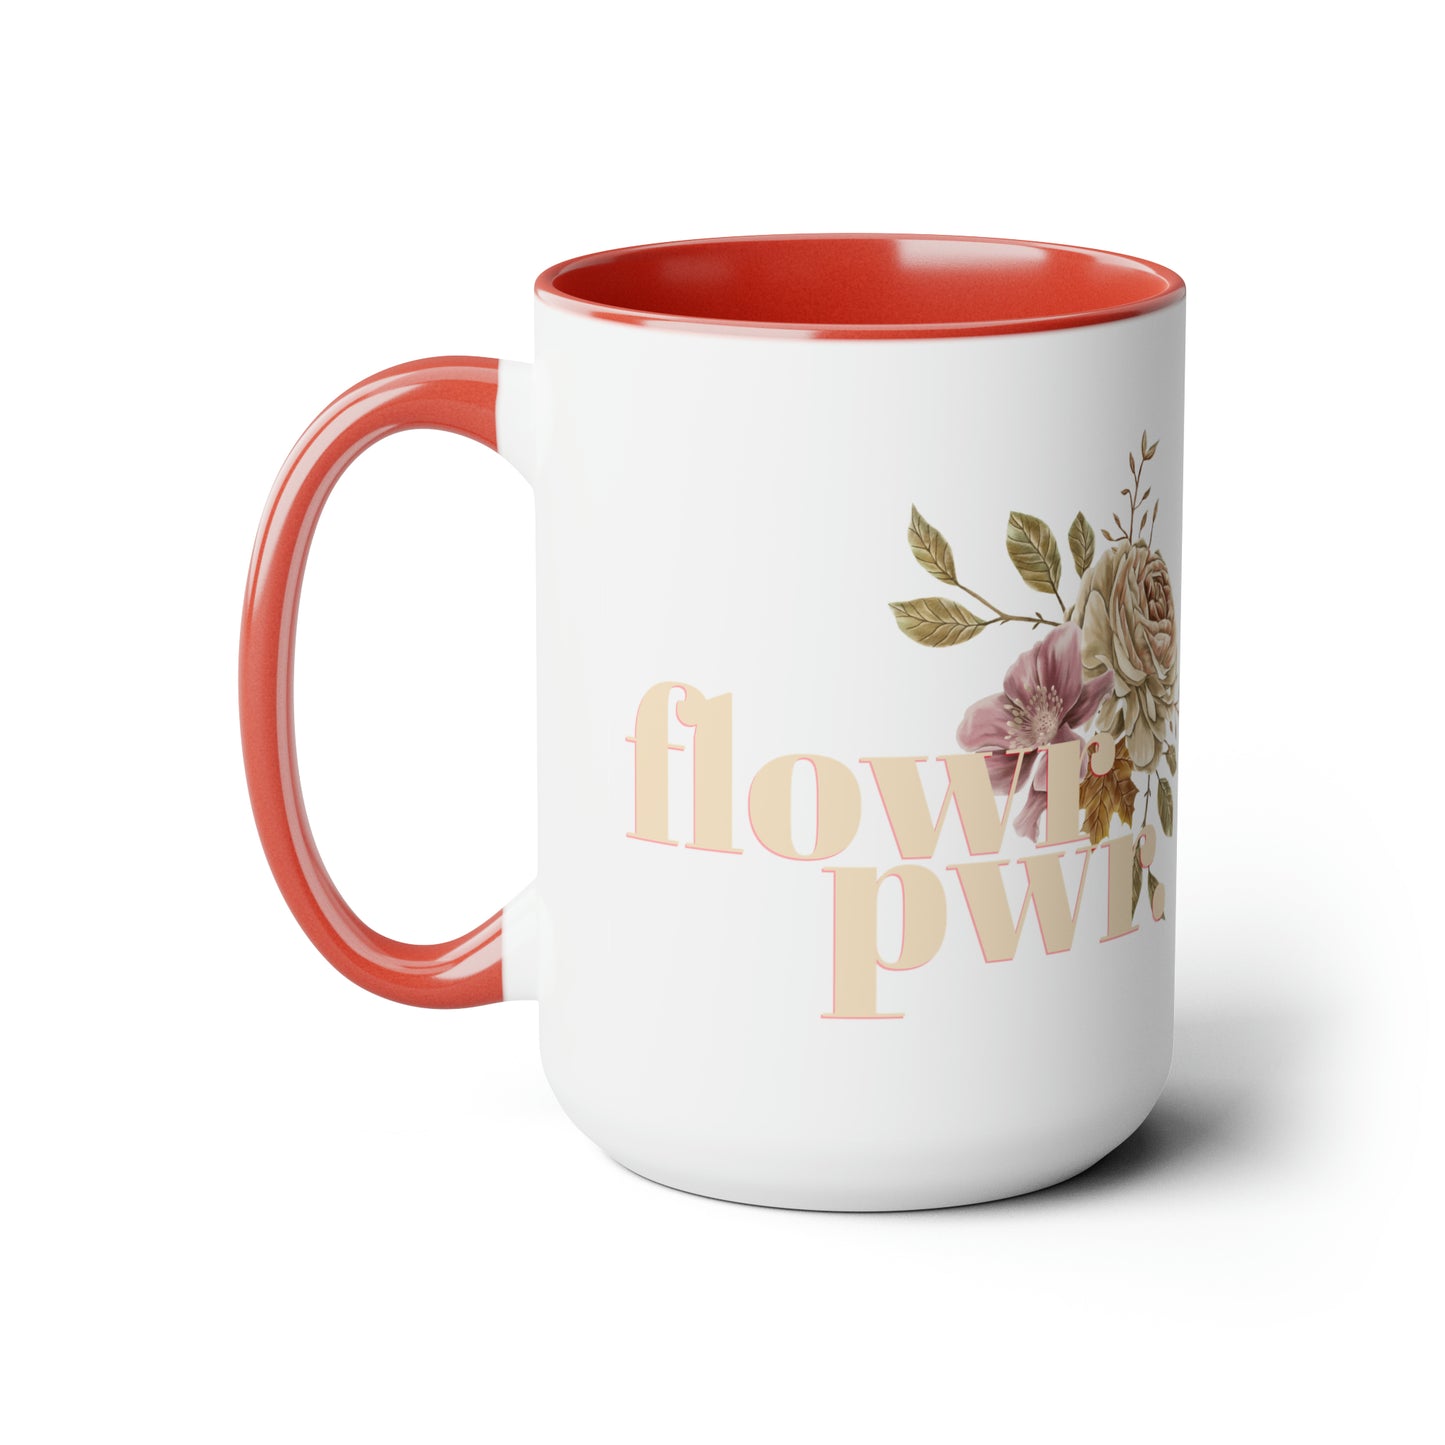 flowr pwr - 15oz graphic mug